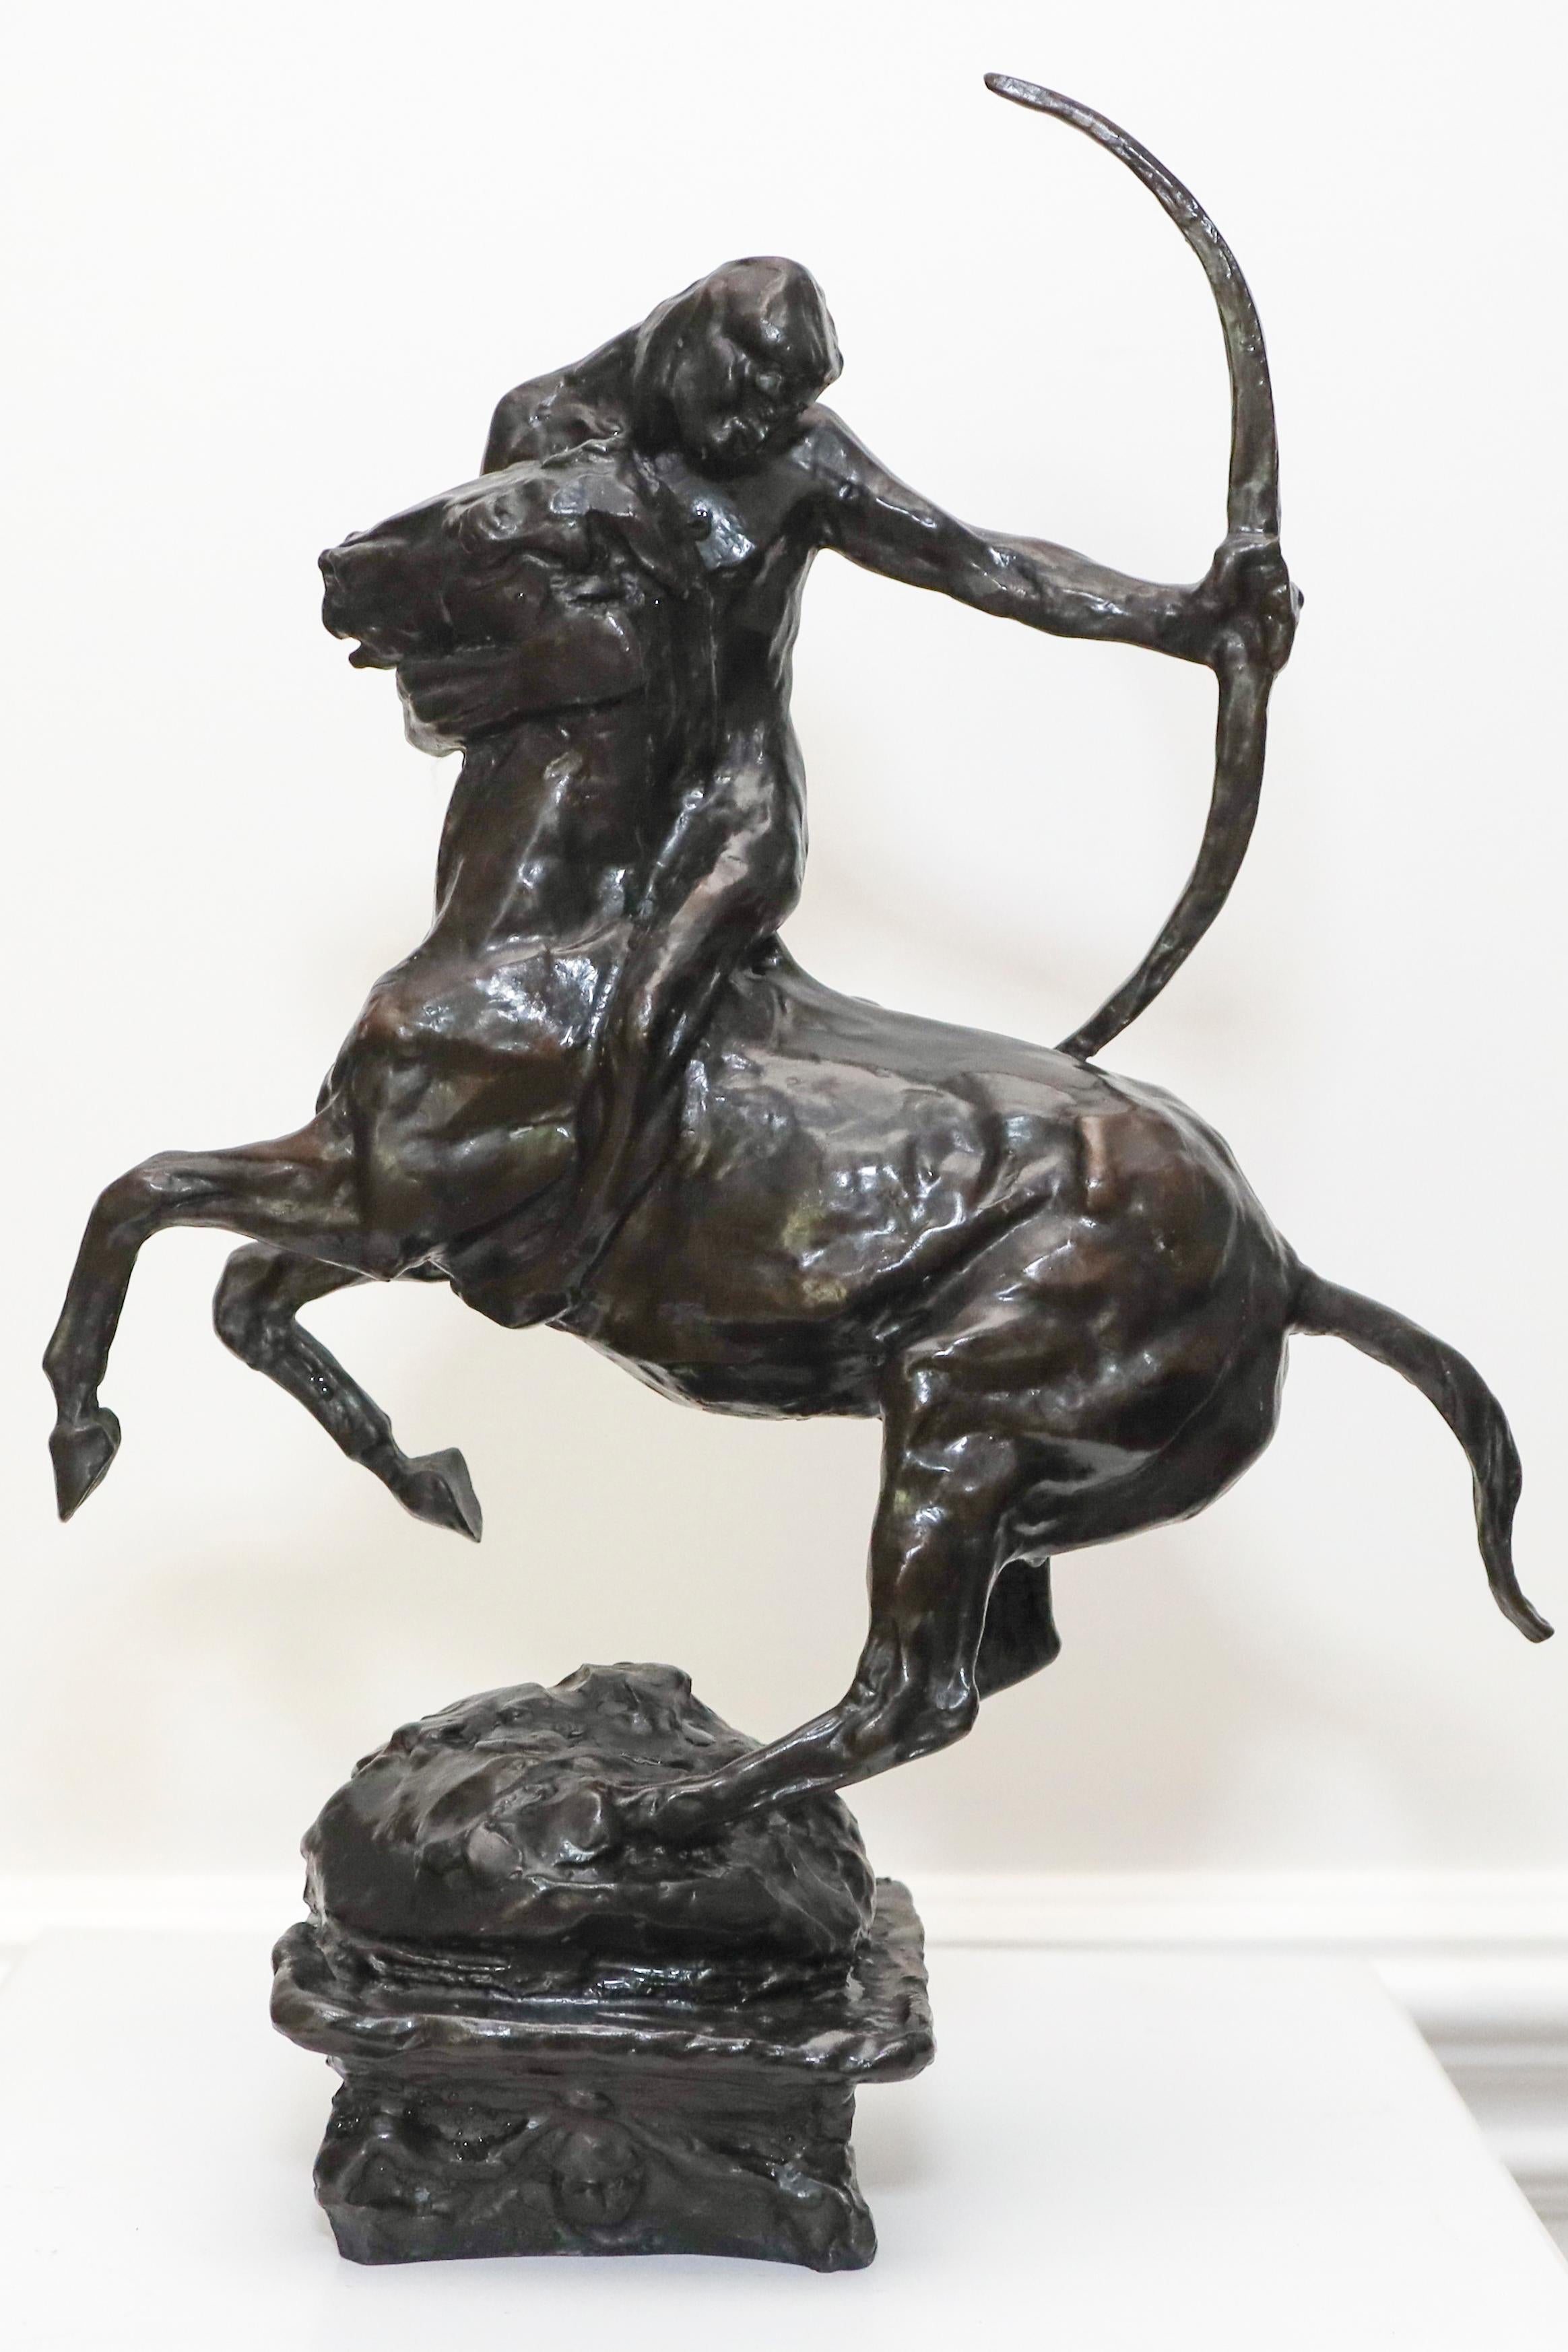 Charles Rumsey Figurative Sculpture - Centaur Bronze Sculpture 